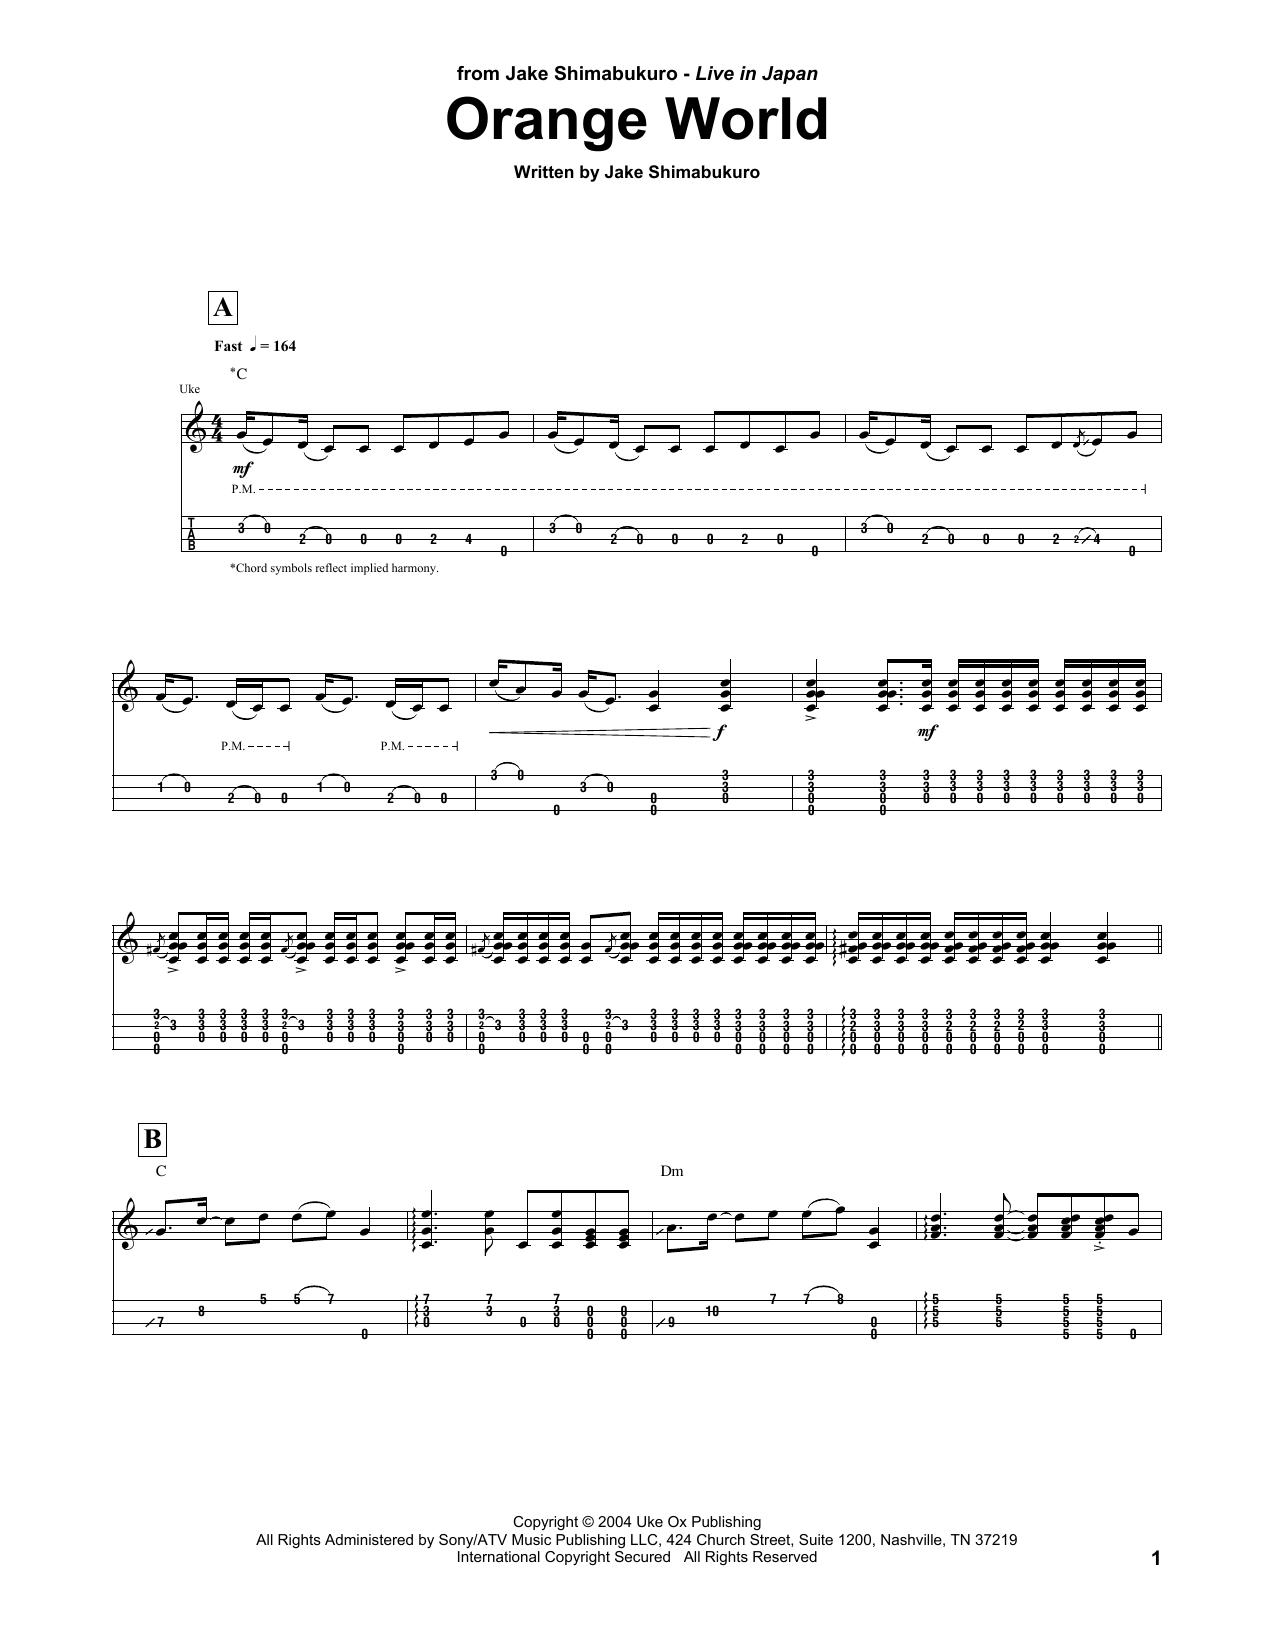 Download Jake Shimabukuro Orange World Sheet Music and learn how to play UKETAB PDF digital score in minutes